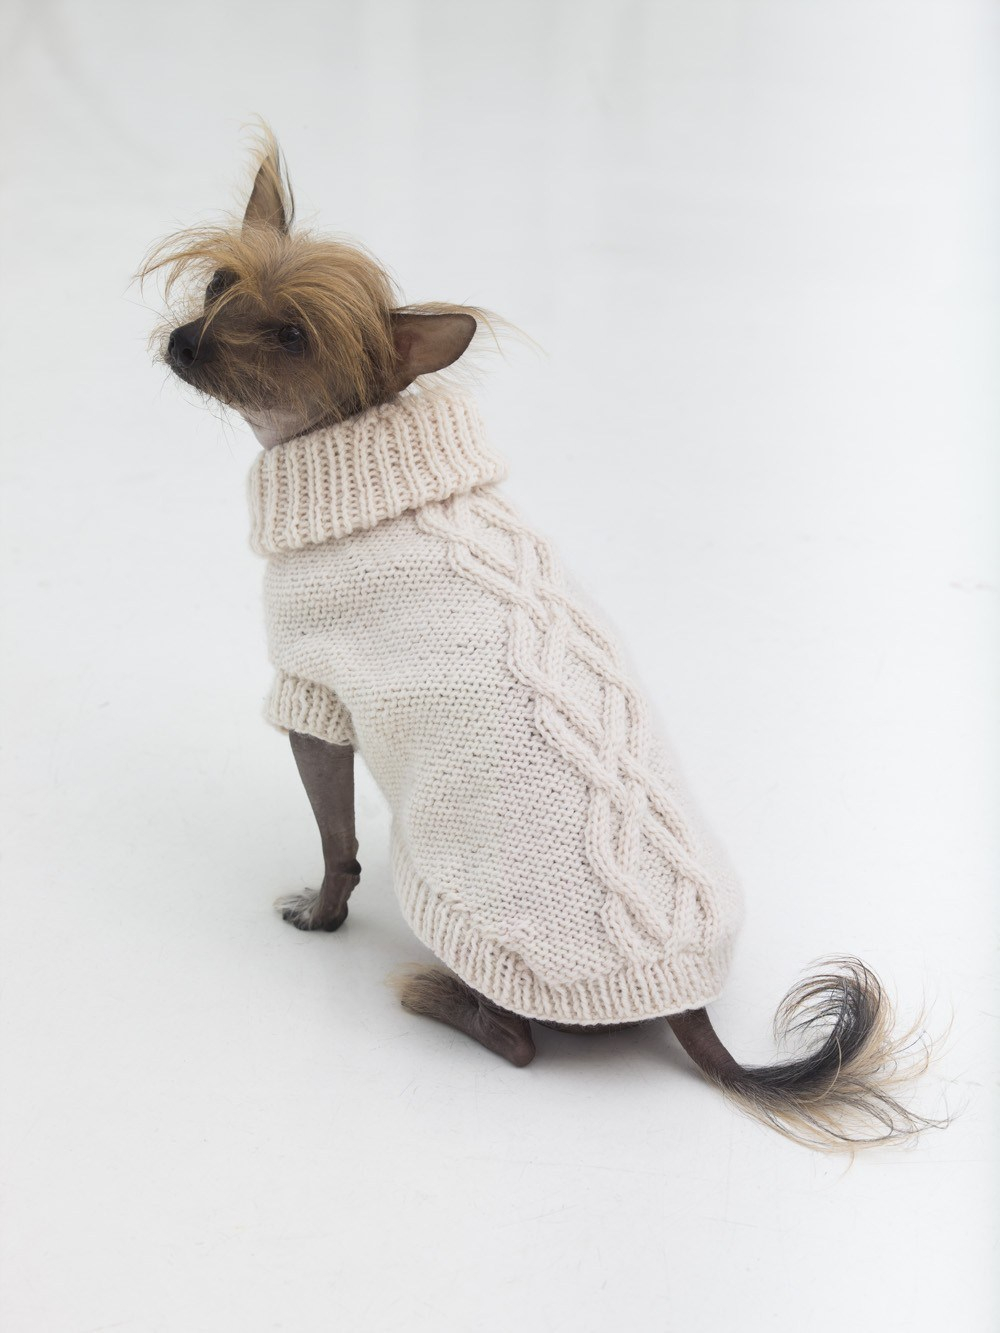 Dog Sweater Knitting Patterns 10 Stunning Examples Of Beautiful Fall Dog Sweaters Free Knitting